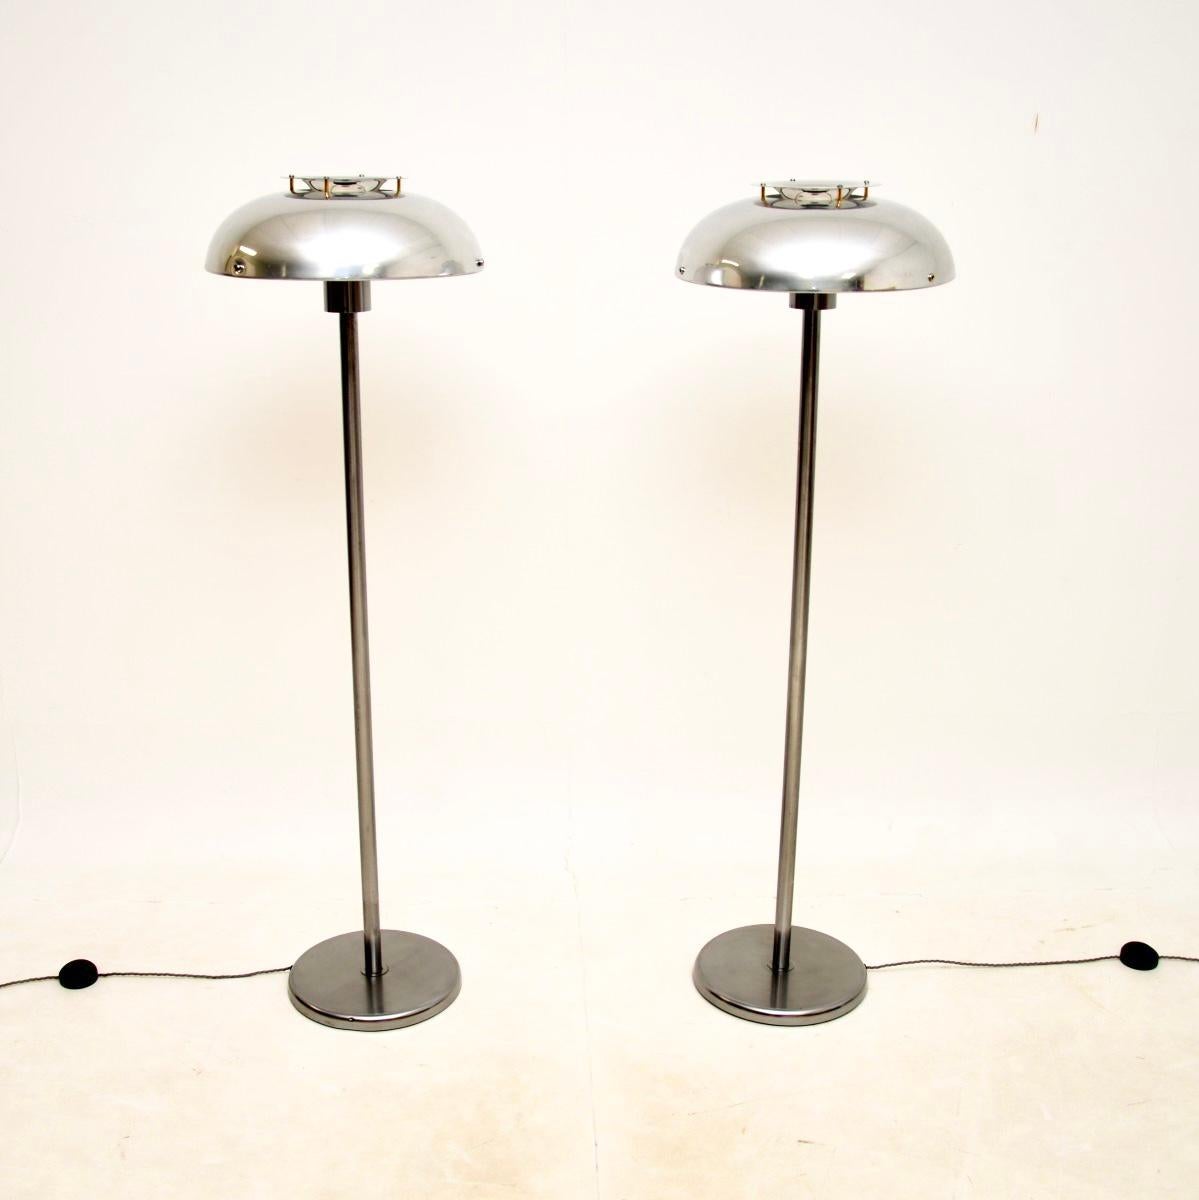 Ein stilvolles und sehr gut gemachtes Paar schwedischer Vintage-Chrom-Stehlampen von Borens. Sie wurden vor kurzem aus Schweden importiert und stammen etwa aus den 1960-70er Jahren.

Die Qualität ist hervorragend, die verchromten Rahmen sind